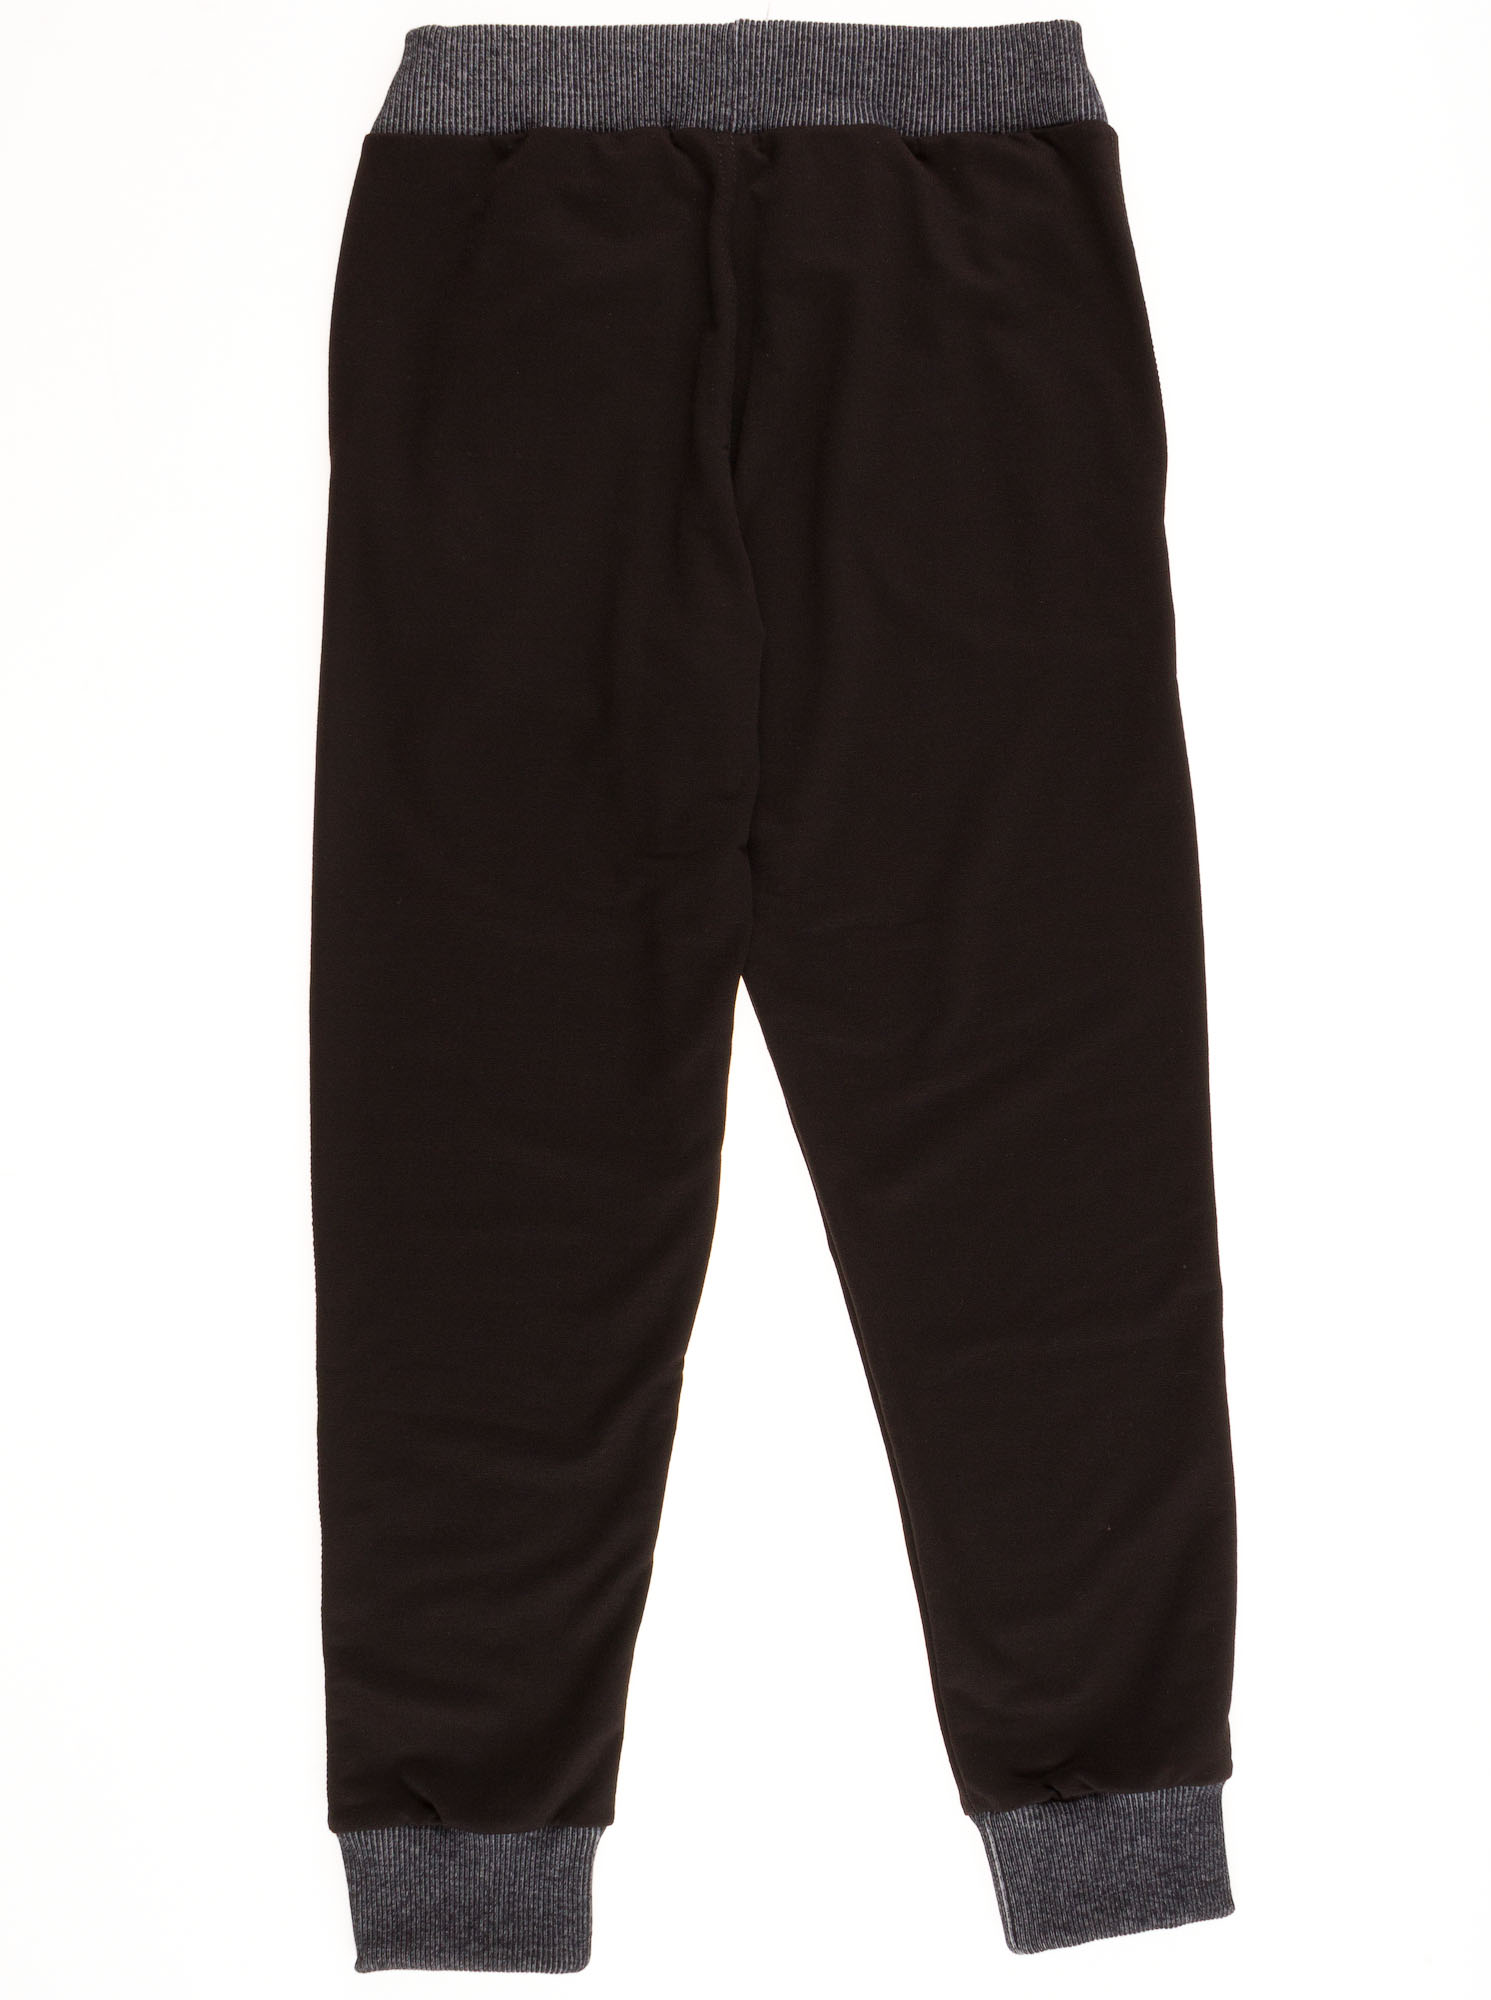 Спортивные штаны для мальчика  Mevis черные to 30-01 - розміри